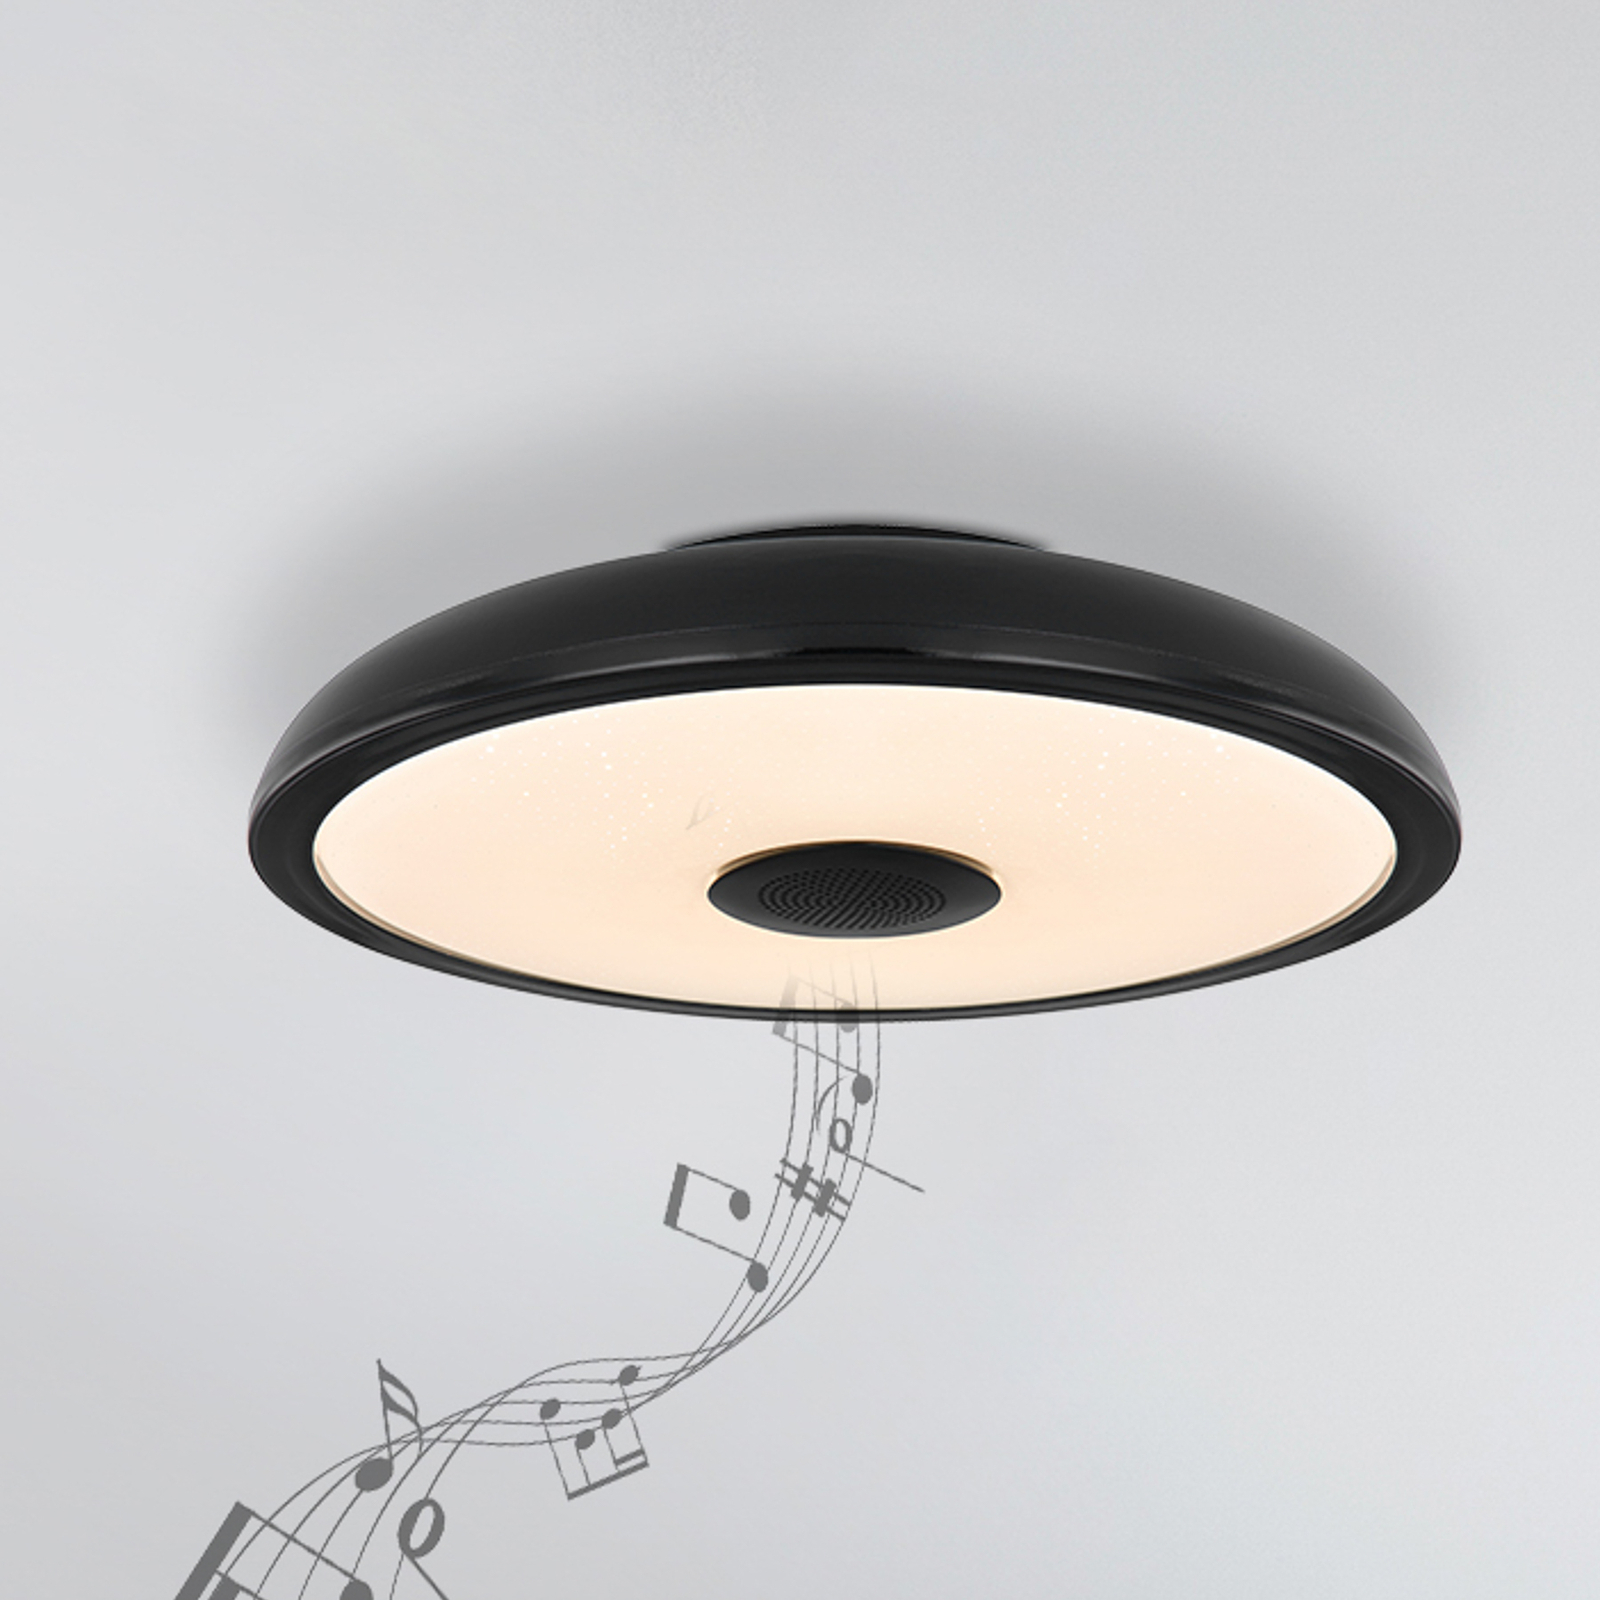 Raffy LED ceiling light speaker RGBW black